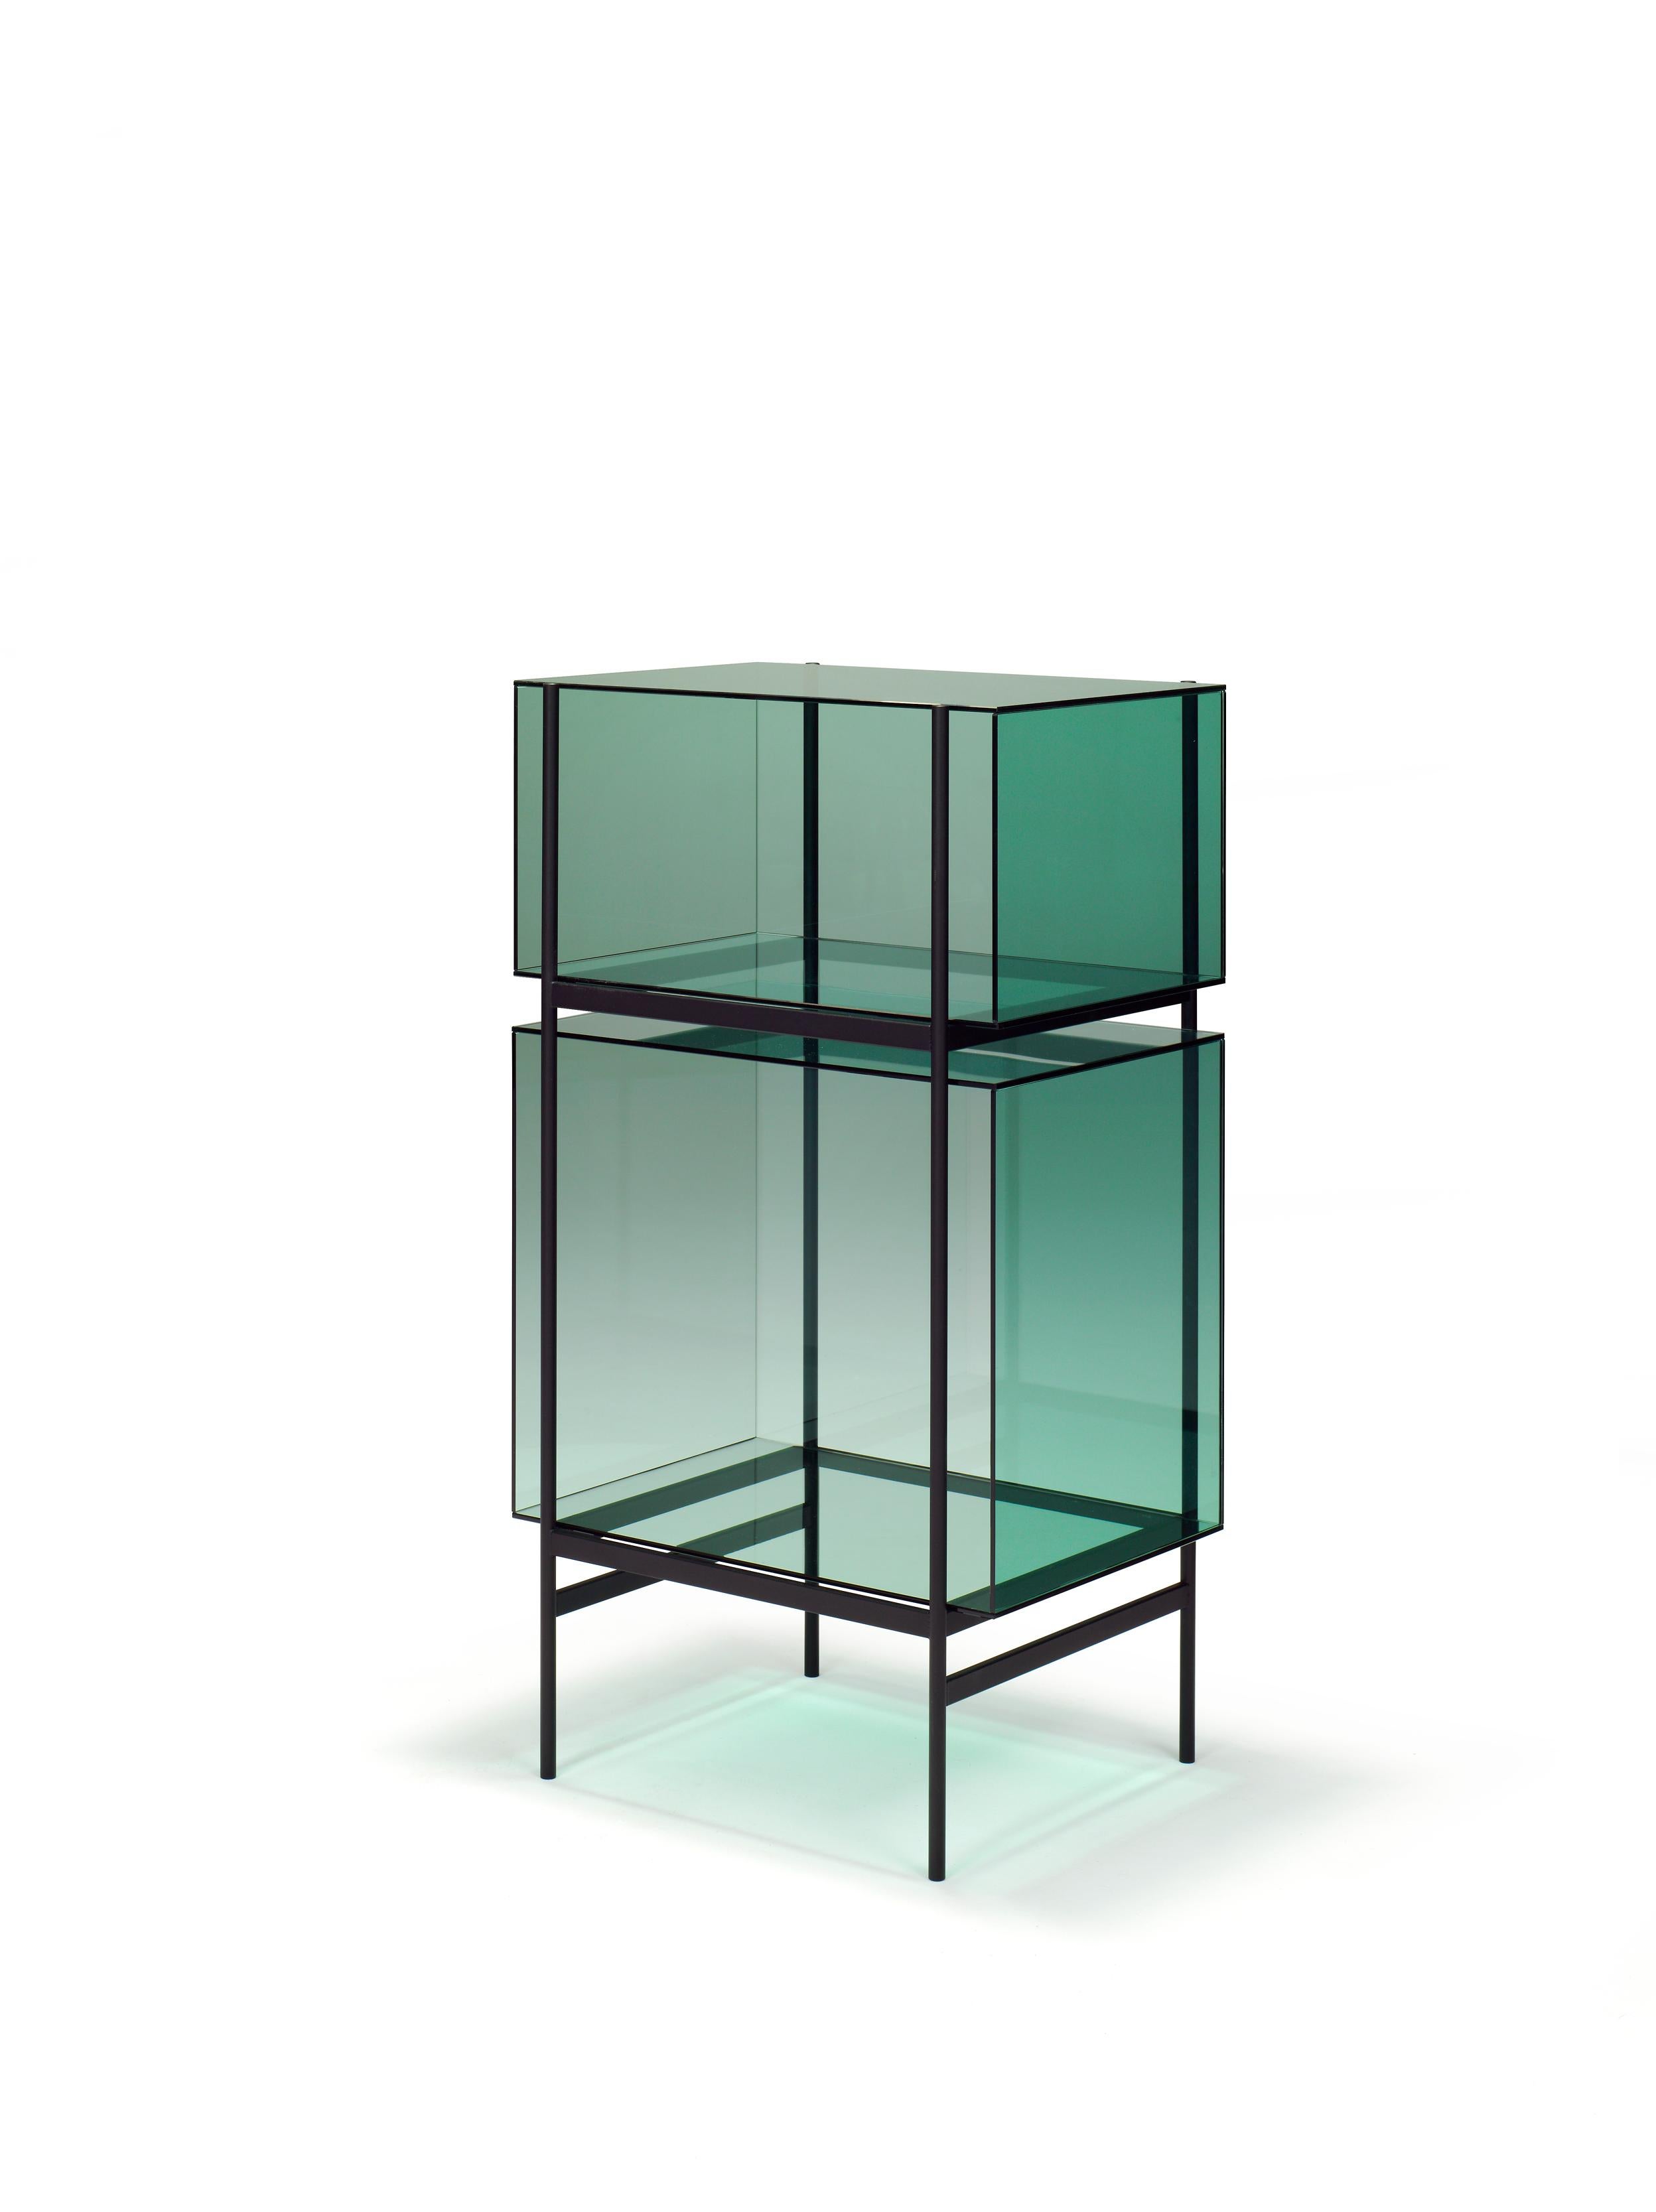 Lyn petite armoire verte et noire de Pulpo
Dimensions : D60 x L45 x H110 cm
Matériaux : verre ; acier peint par poudrage

Disponible également en différentes couleurs. 

Le Studio Visser & Meijwaard décrit sa conception de lyn comme un 